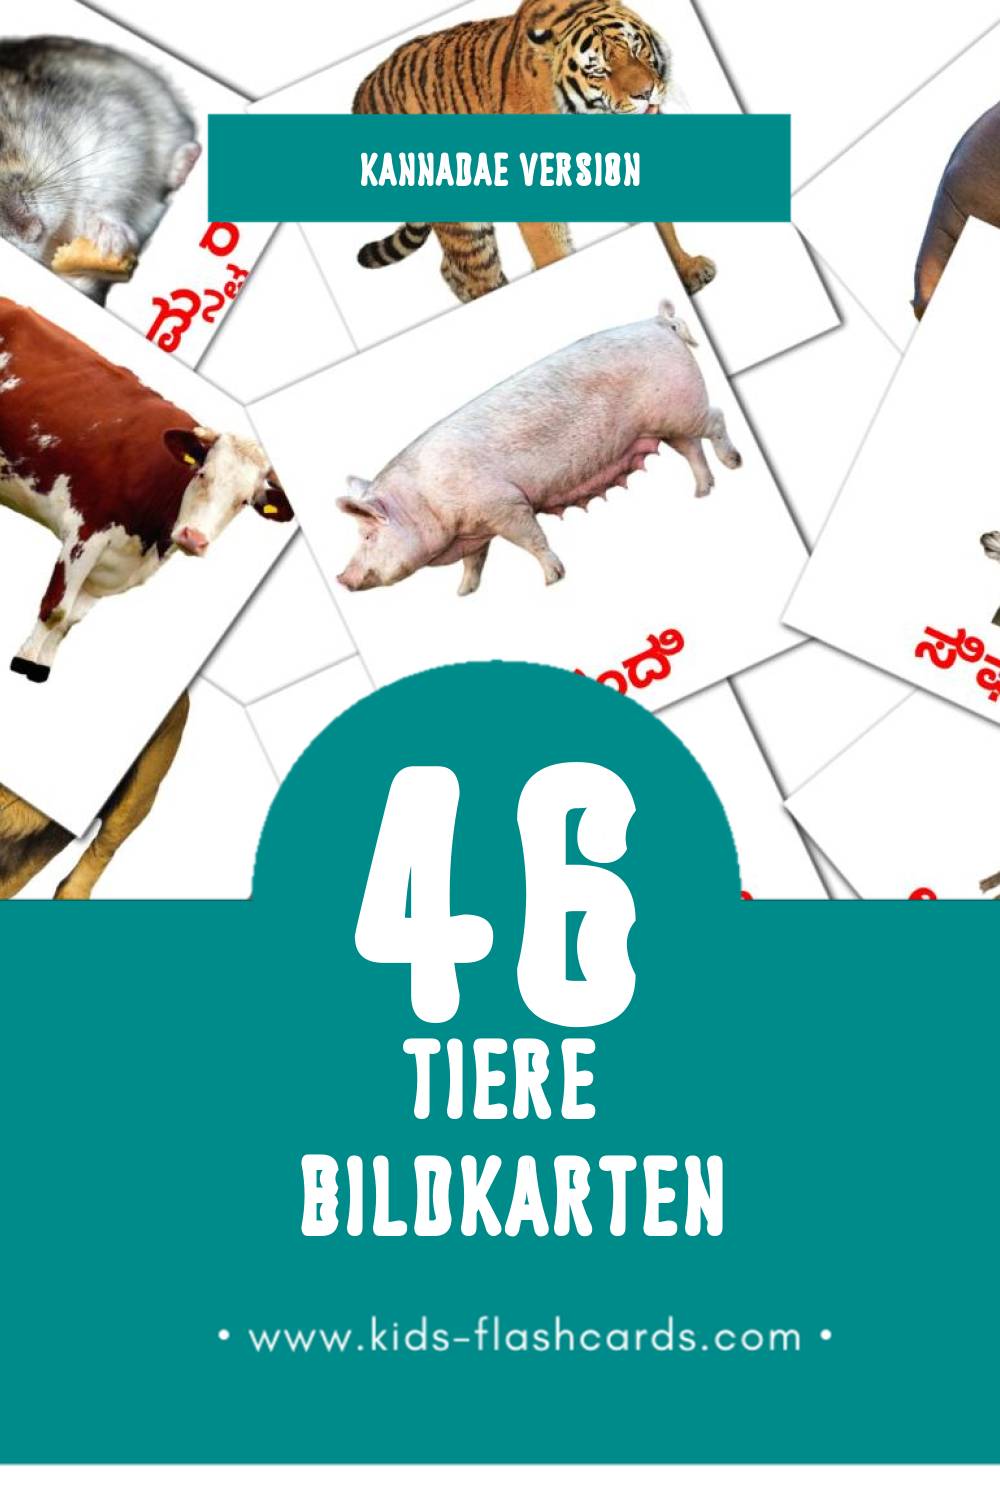 Visual ಪ್ರಾಣಿಗಳು Flashcards für Kleinkinder (46 Karten in Kannada)